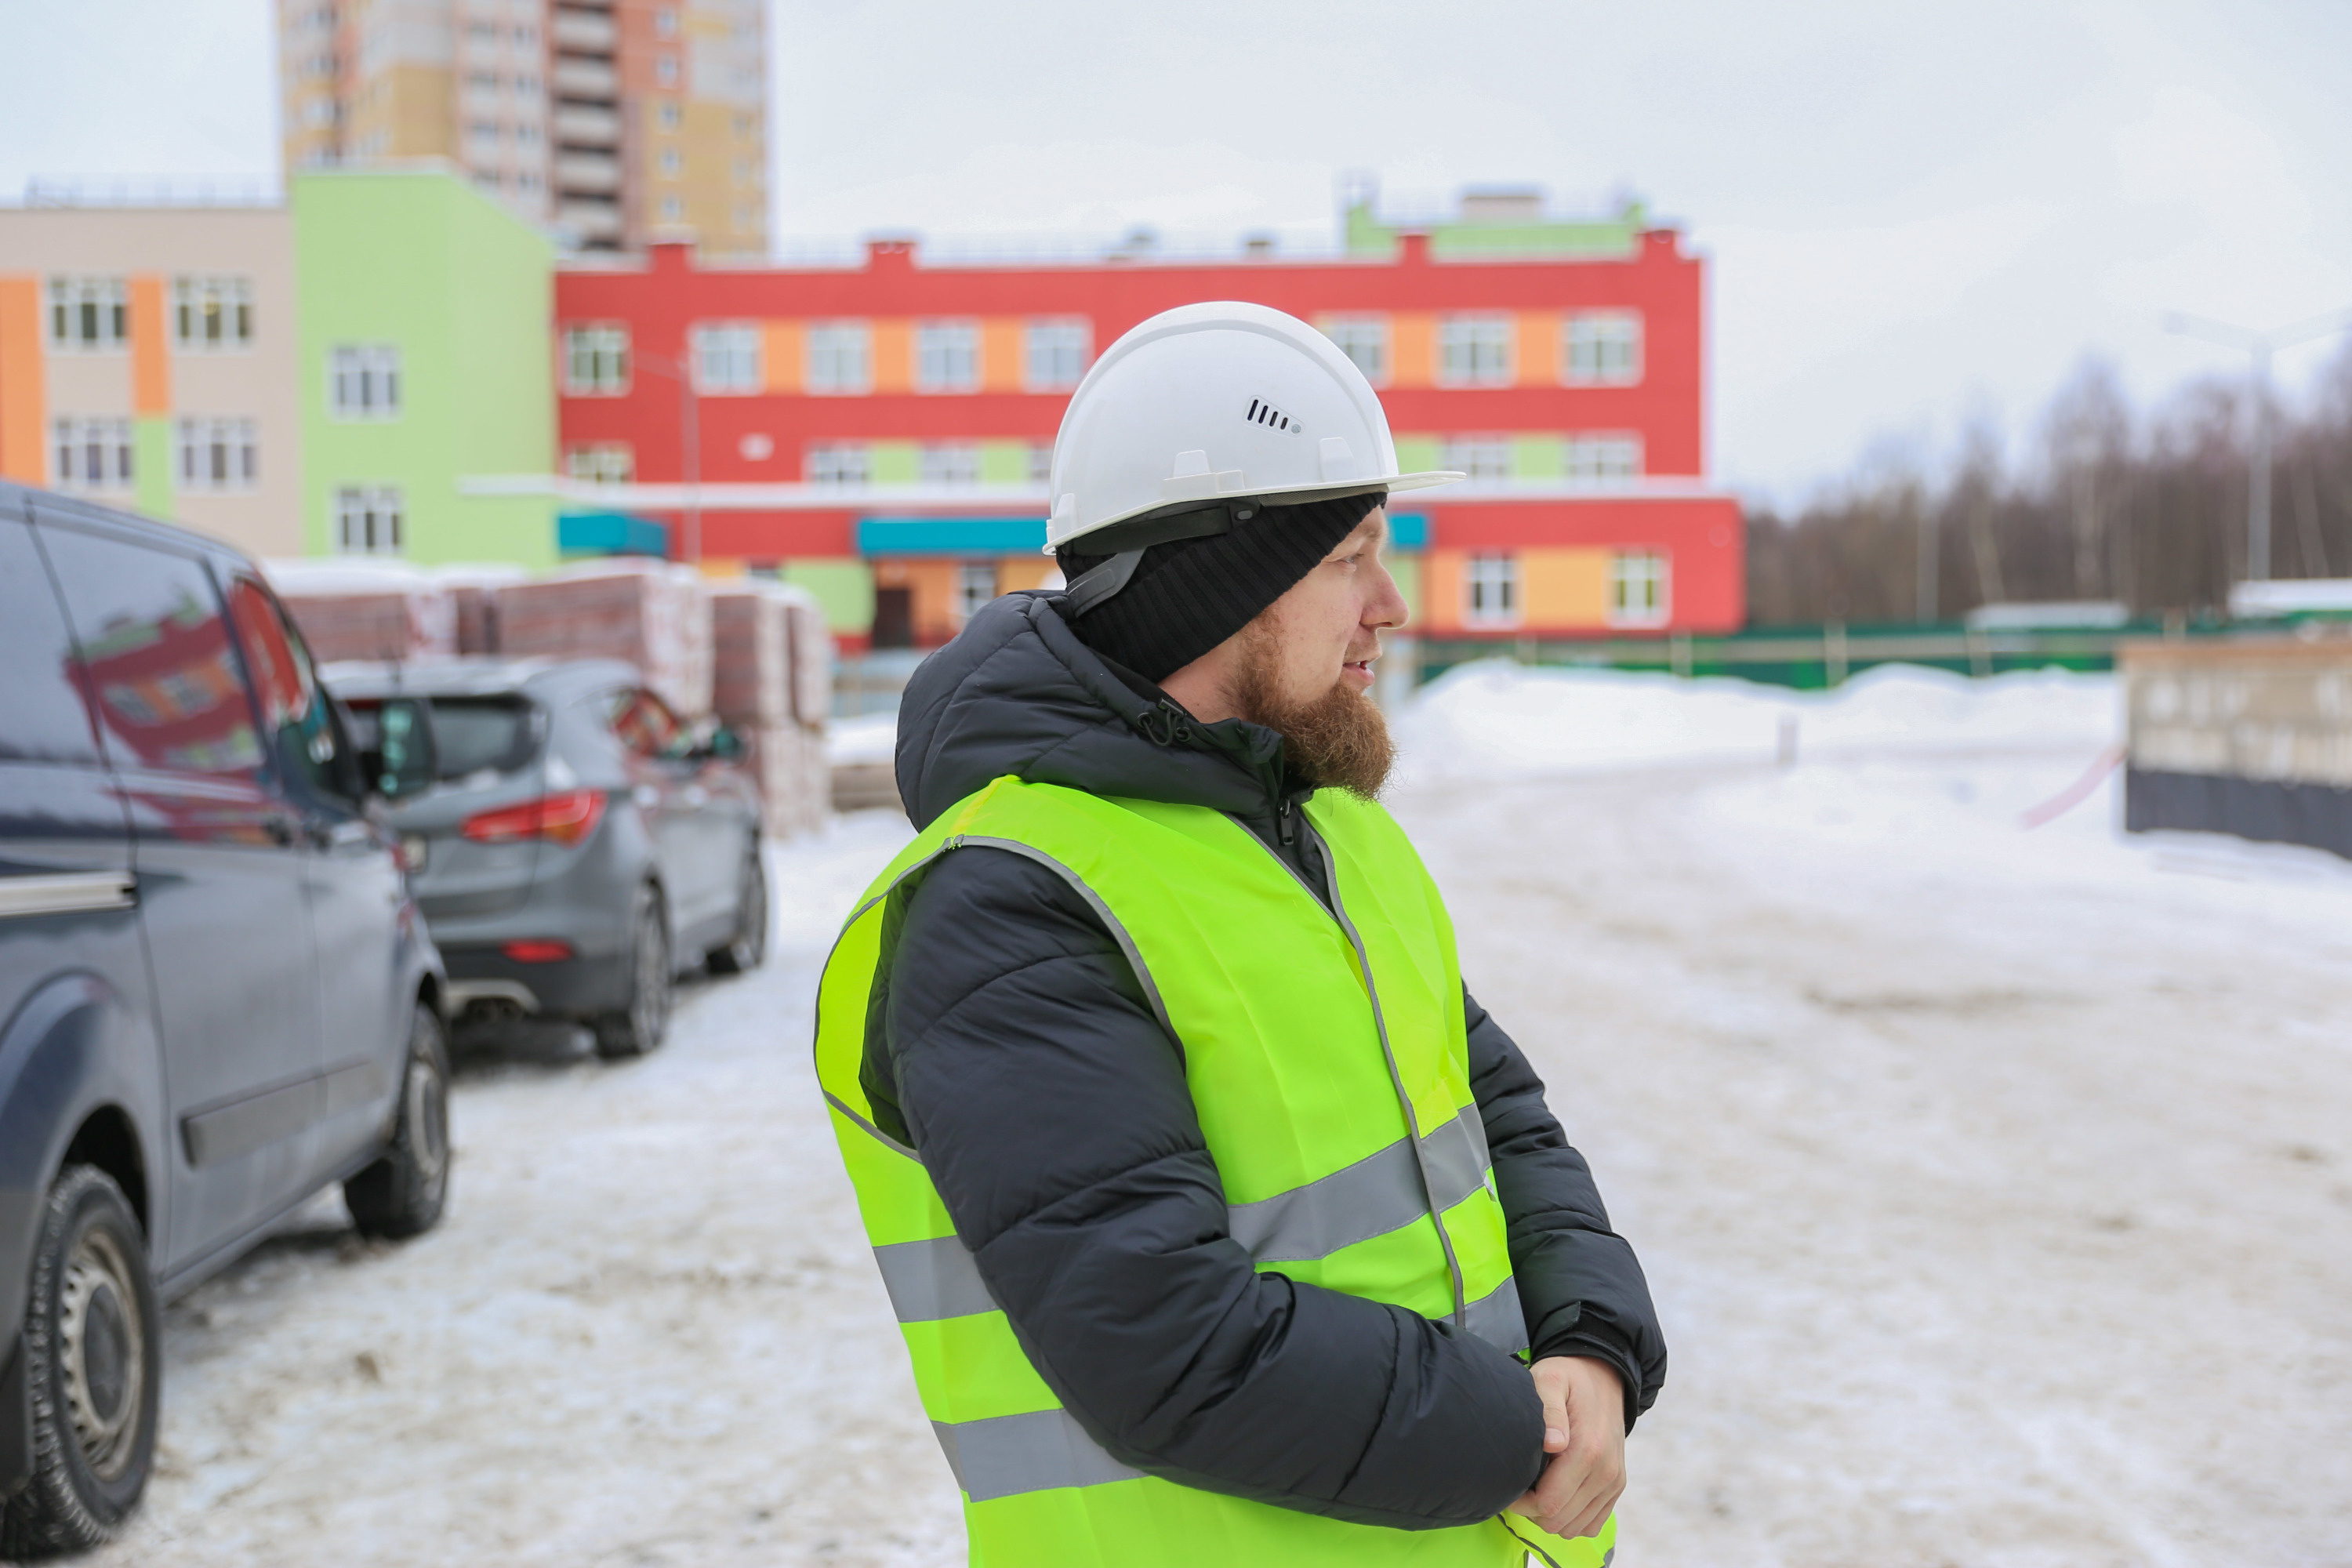 Руководитель отдела продаж строительного дома MENGEL Сергей Федоров уверен, что компания больше не пойдет на такие репутационные риски